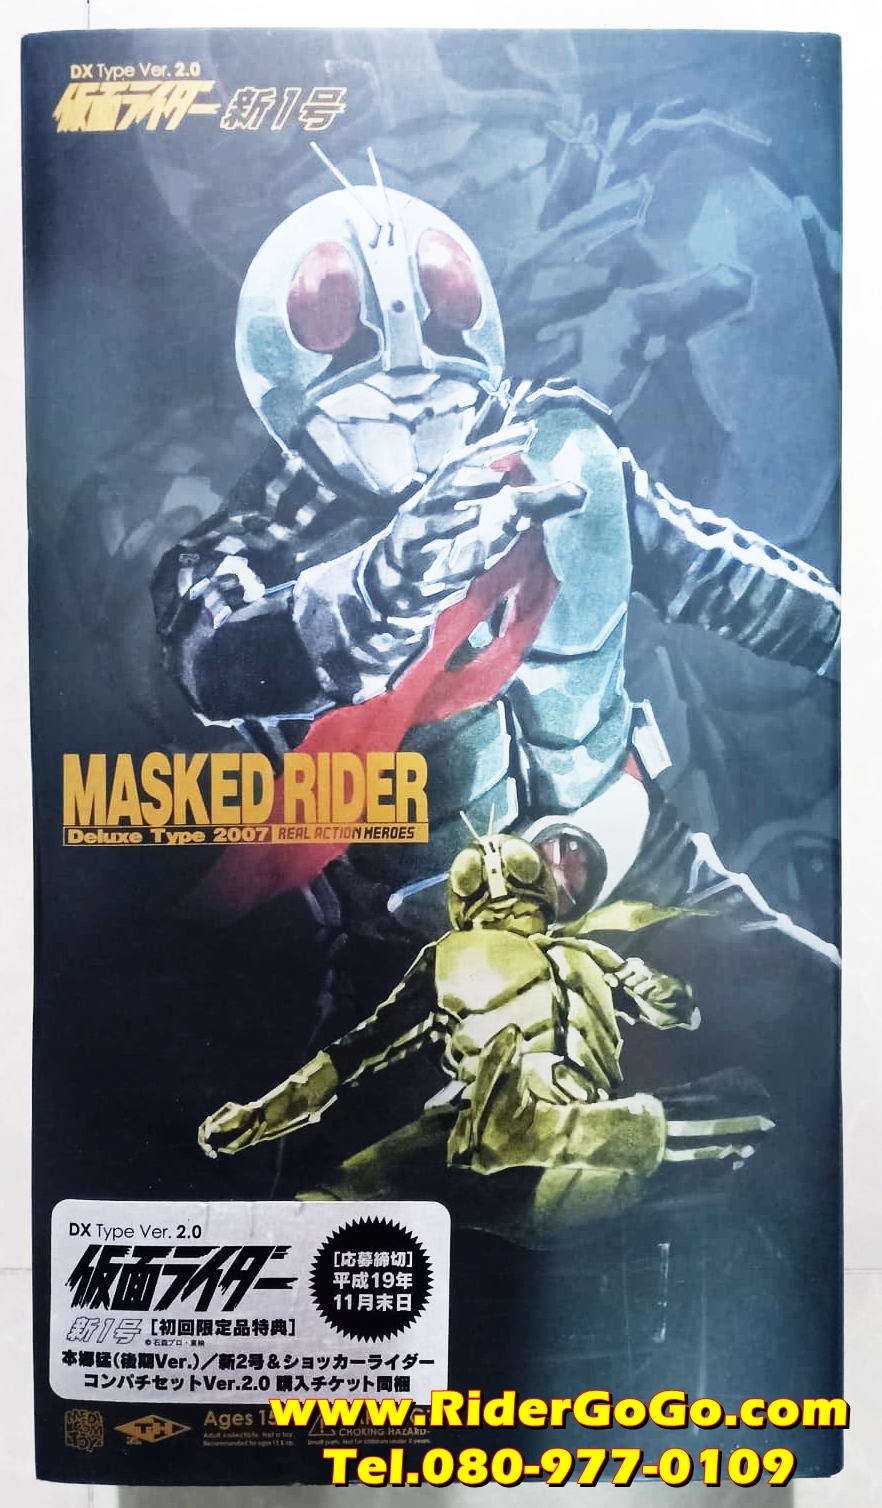 โมเดลชุดผ้ามาสค์ไรเดอร์หมายเลข1 Masked Rider Deluxe Type 2007 Real Action Heroes ของใหม่แท้จากประเทศญี่ปุ่น รูปที่ 1